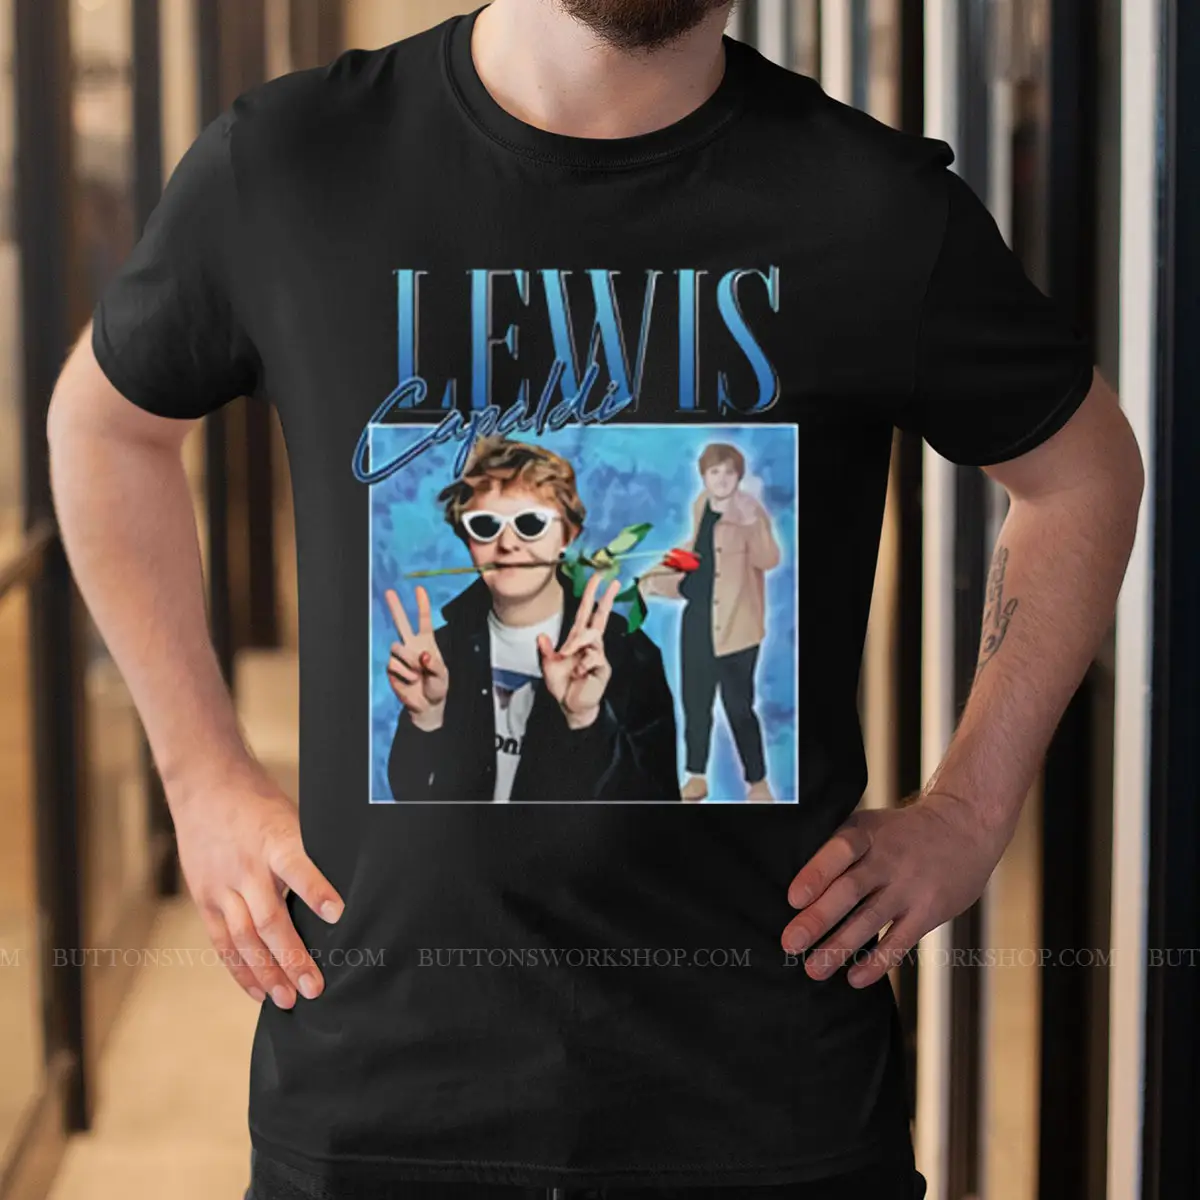 Lewis Capaldi Shirt Unisex Tshirt